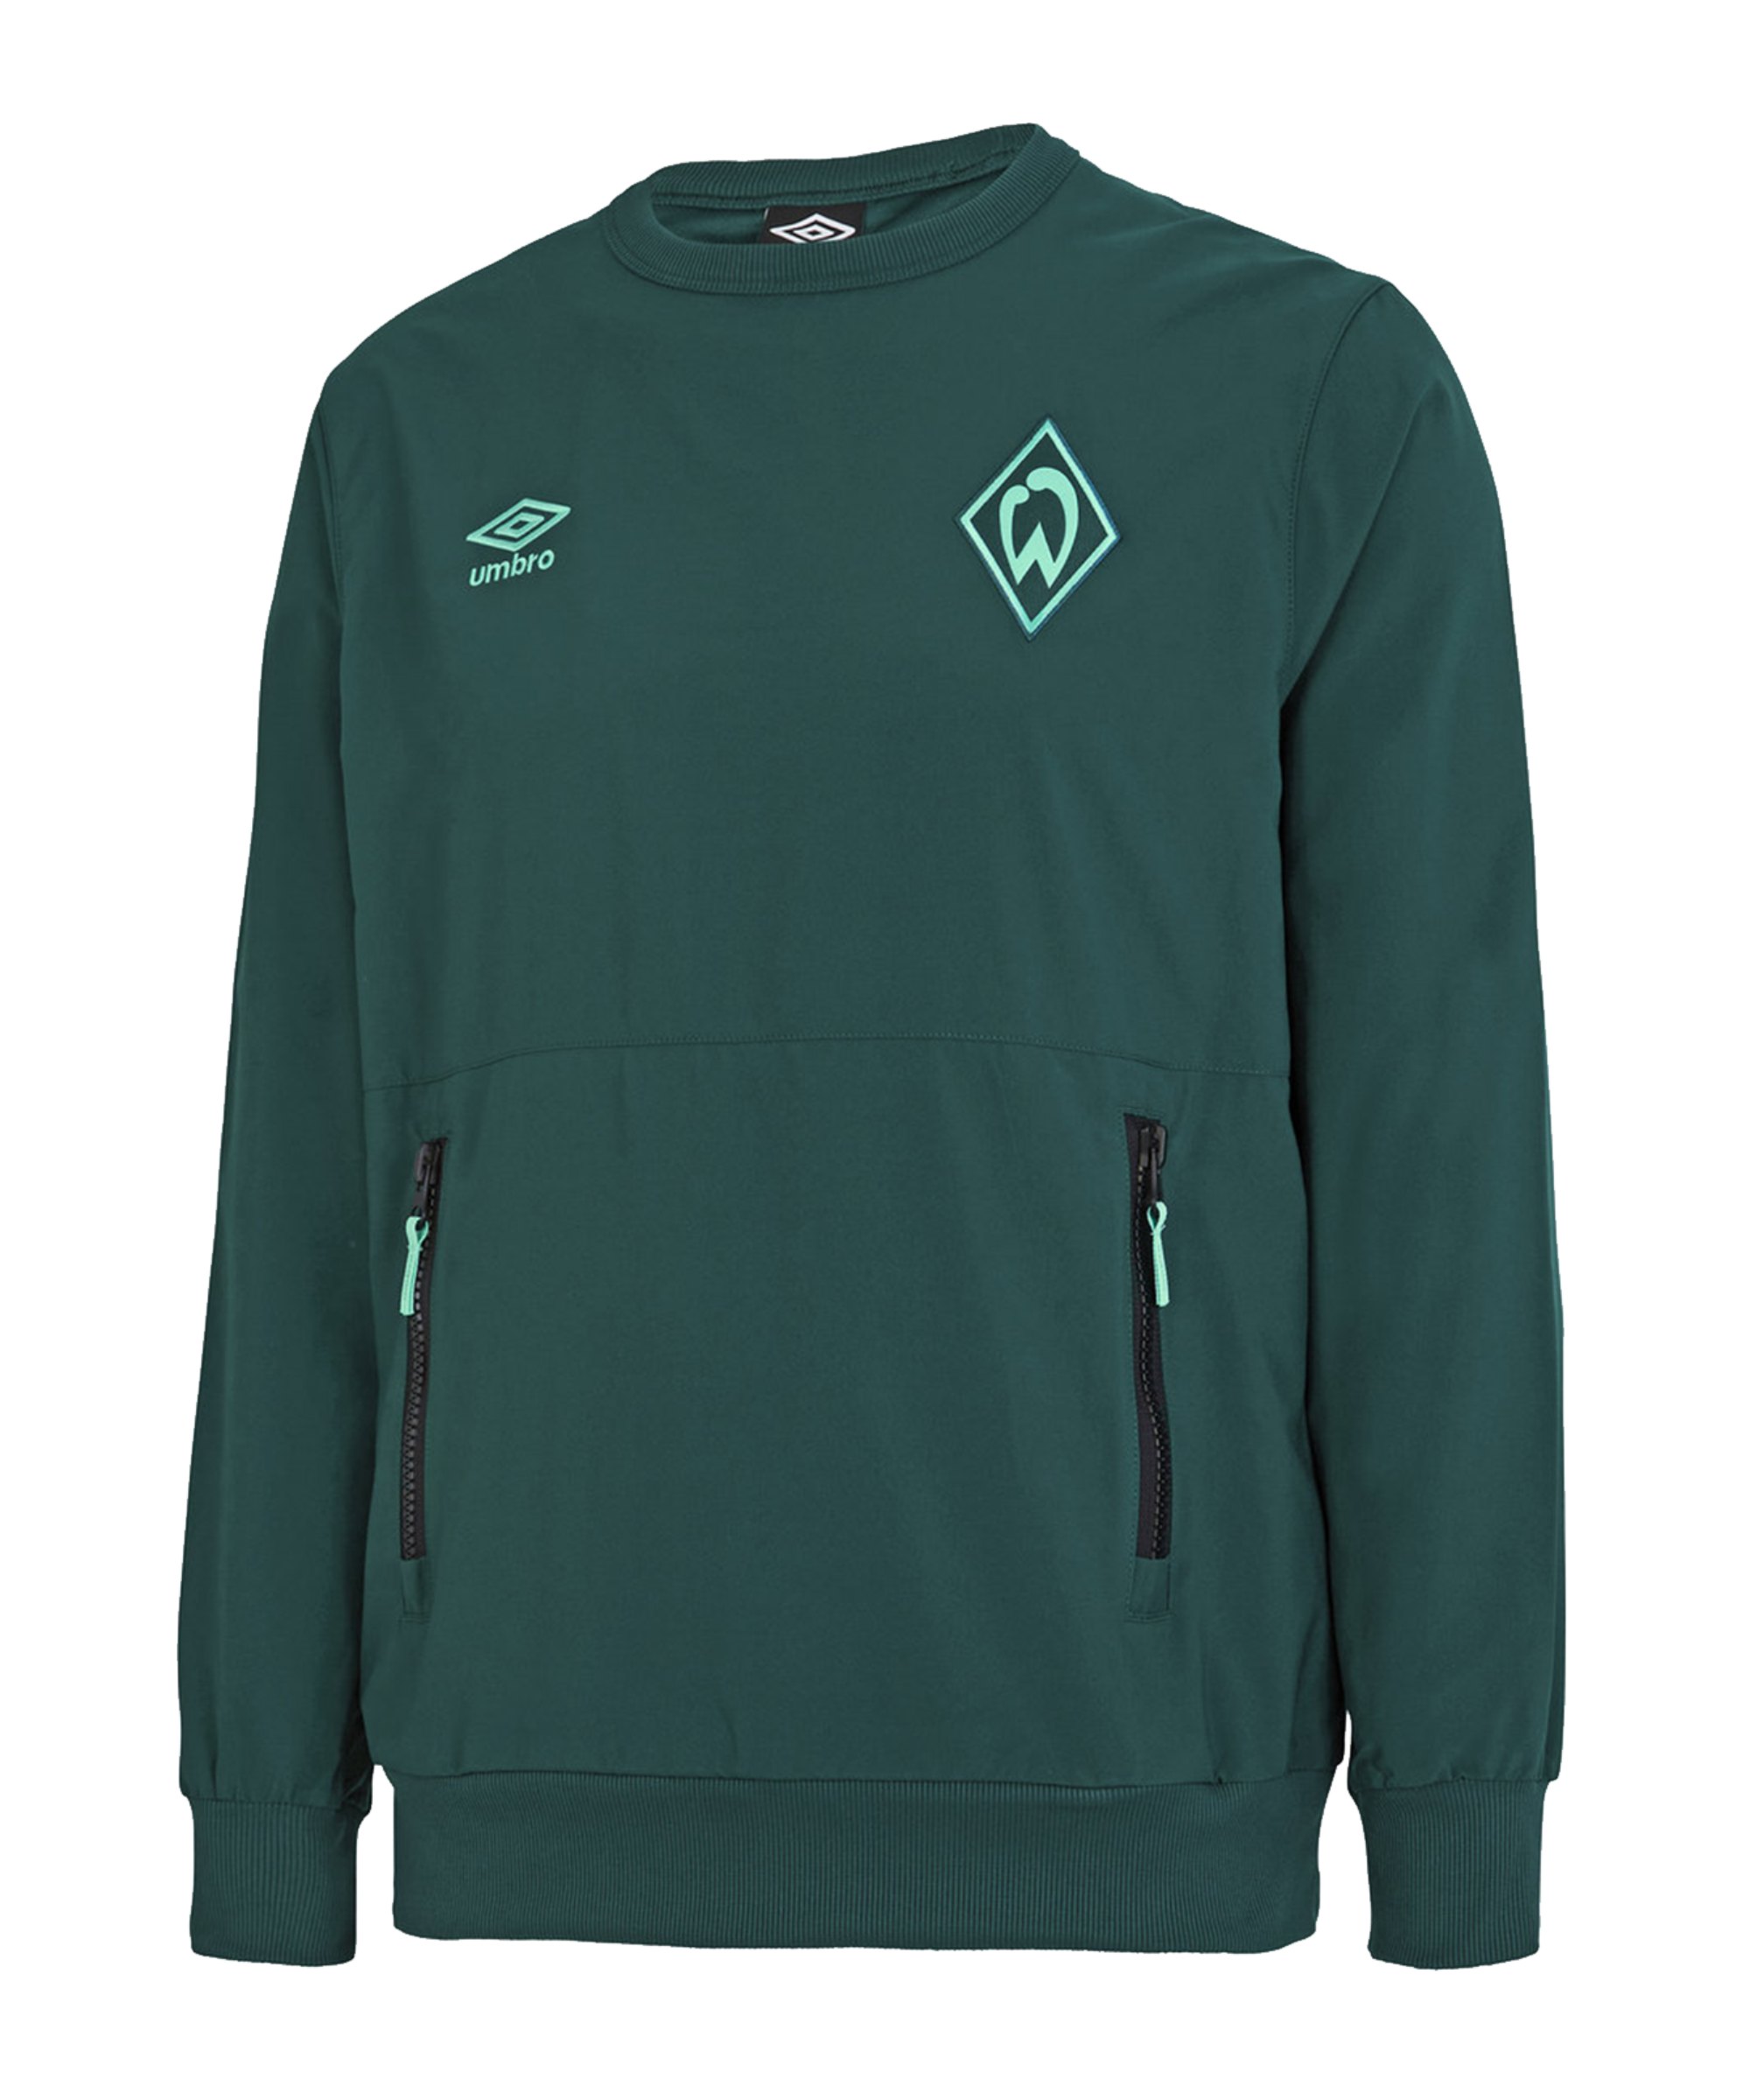 Umbro Werder Bremen Travel Sweatshirt Grün - gruen